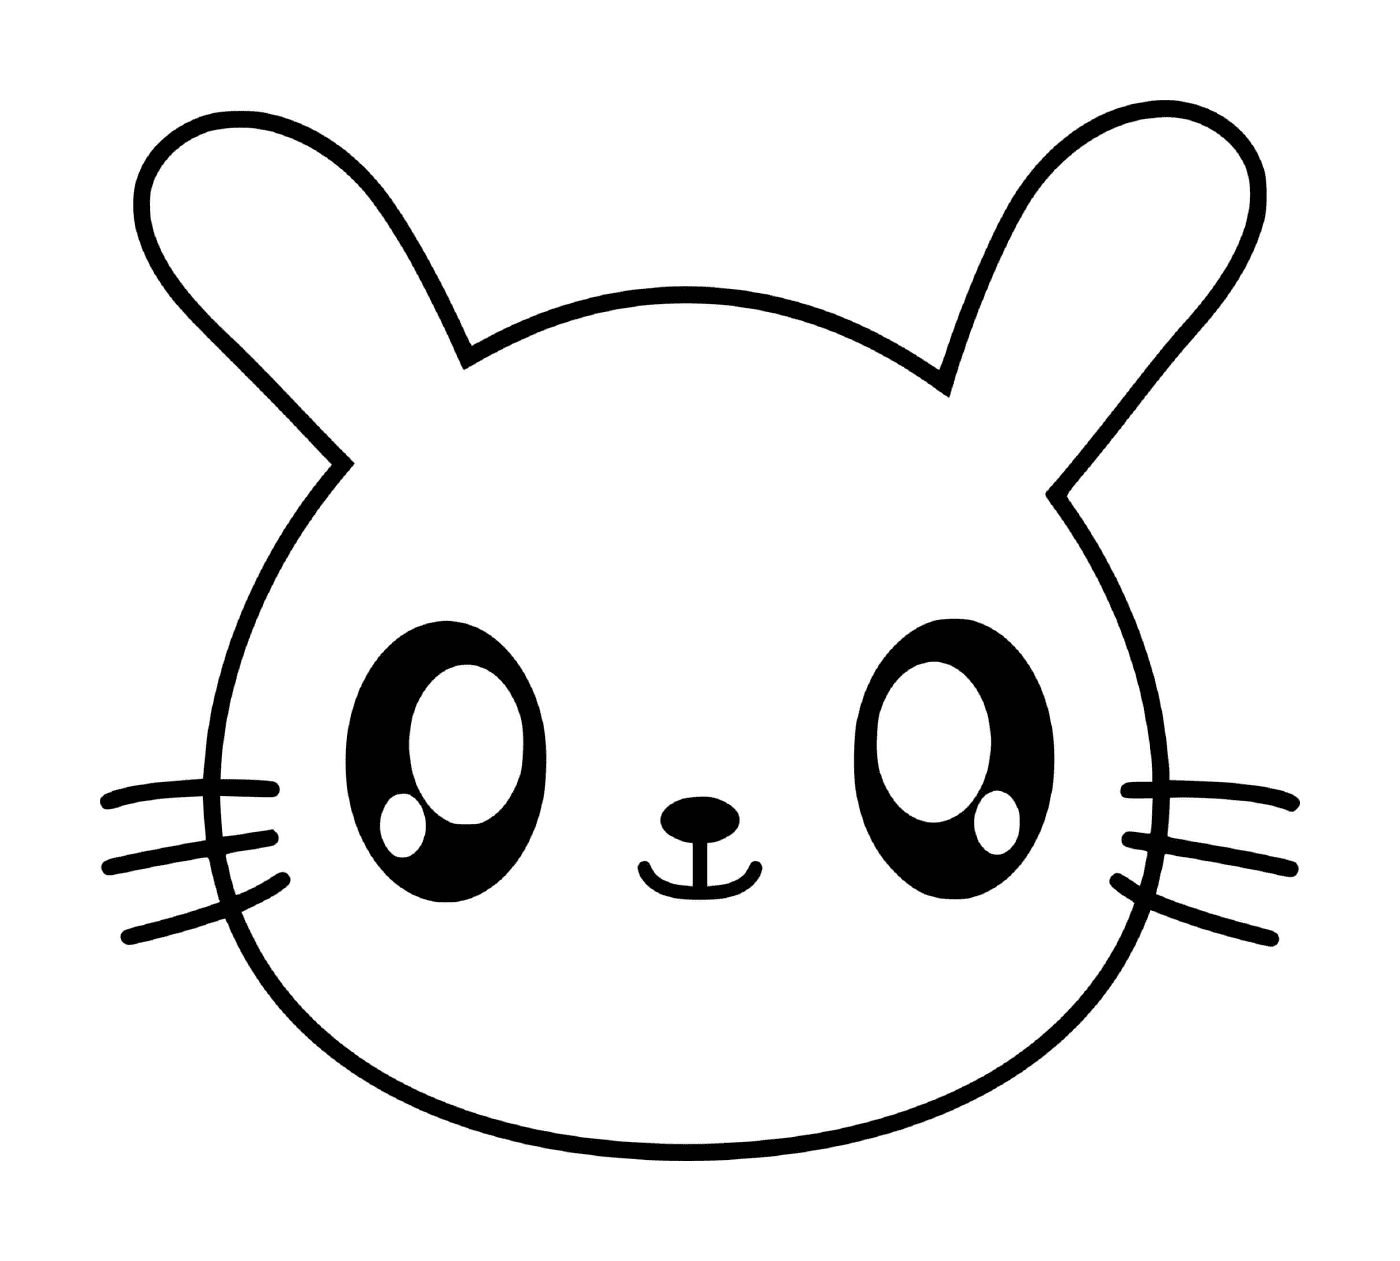  Conejo kawaii con ojos grandes 